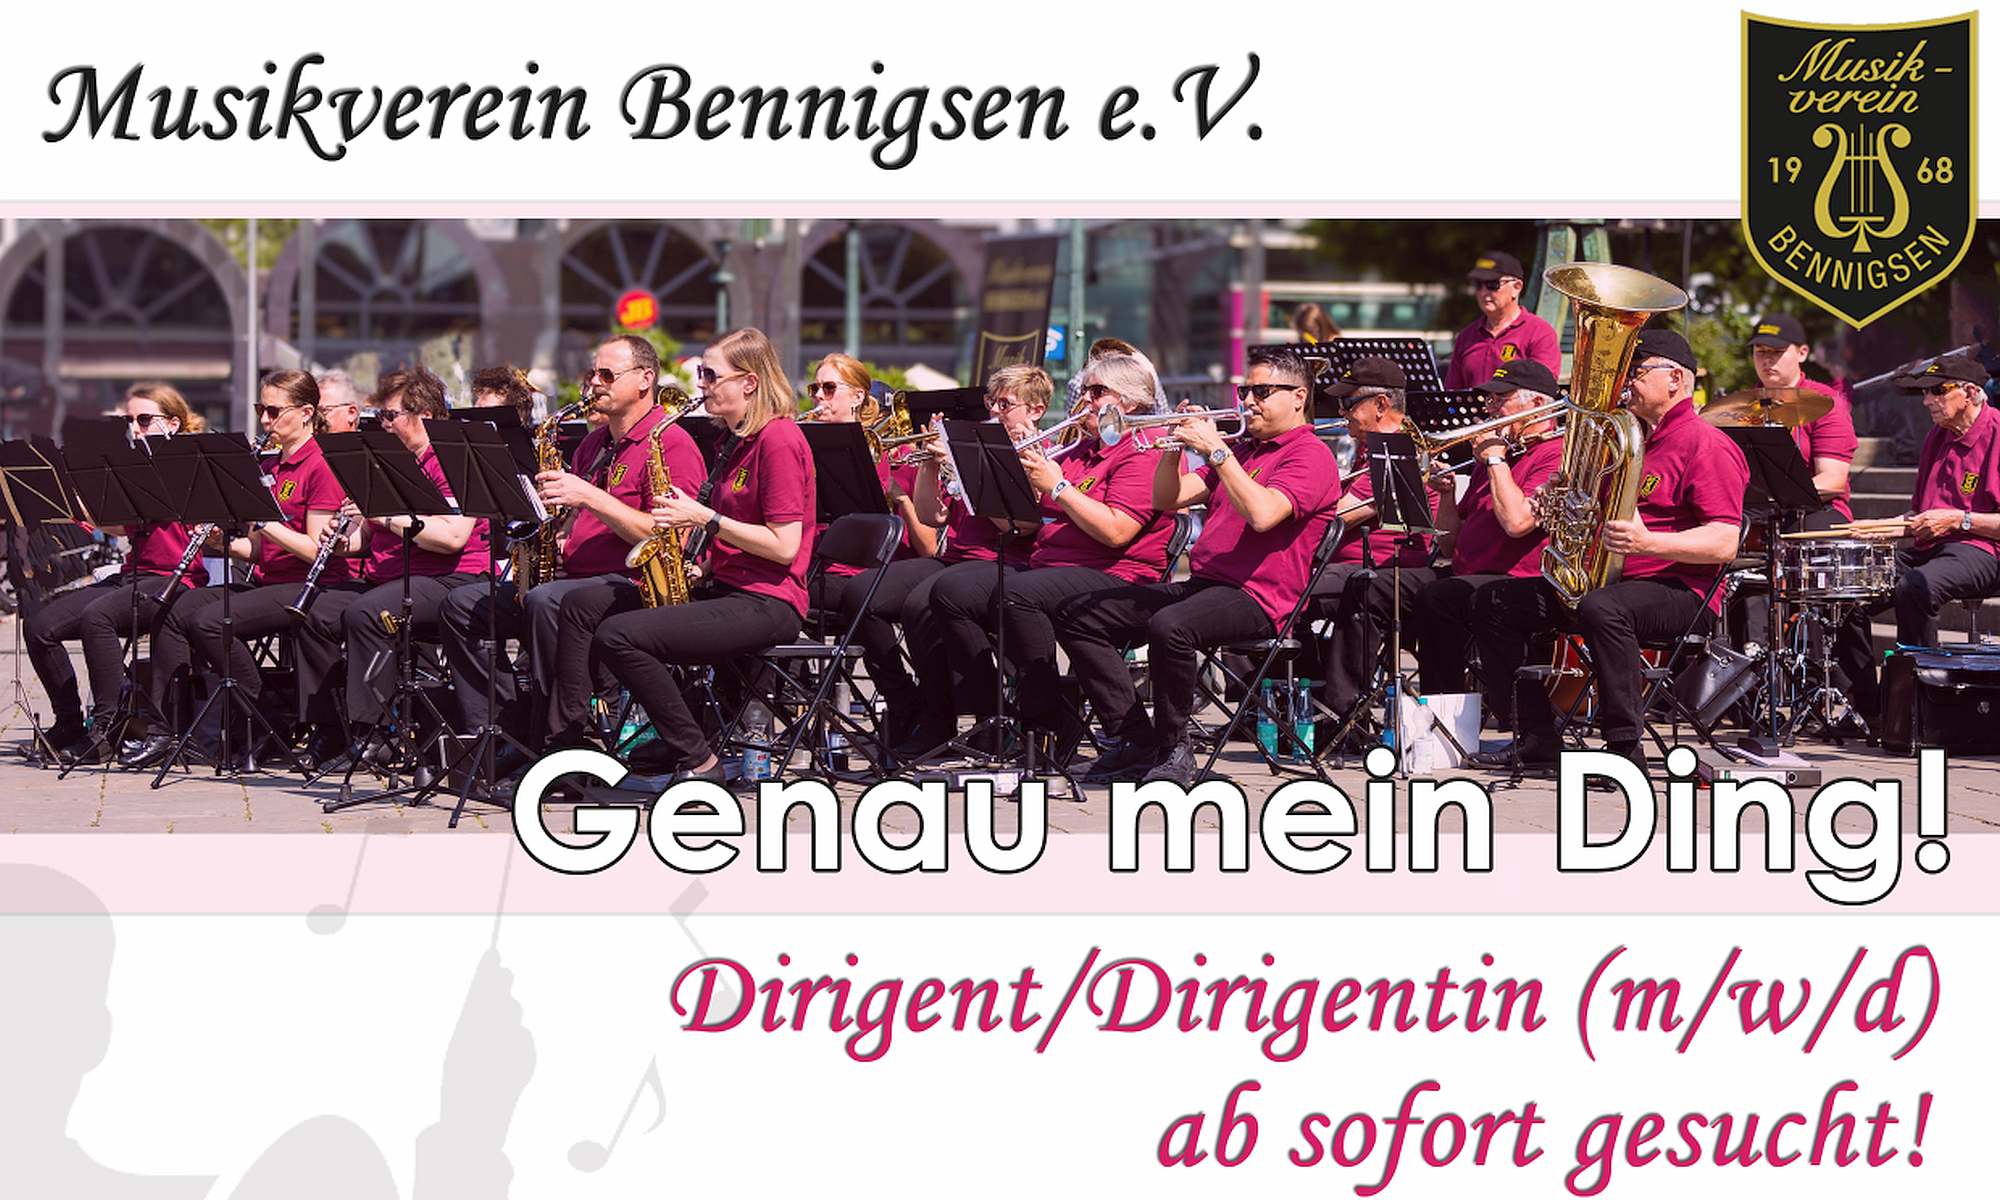 Musikverein Bennigsen e.V. sucht Dirigent/Dirigentin (m/w/d)